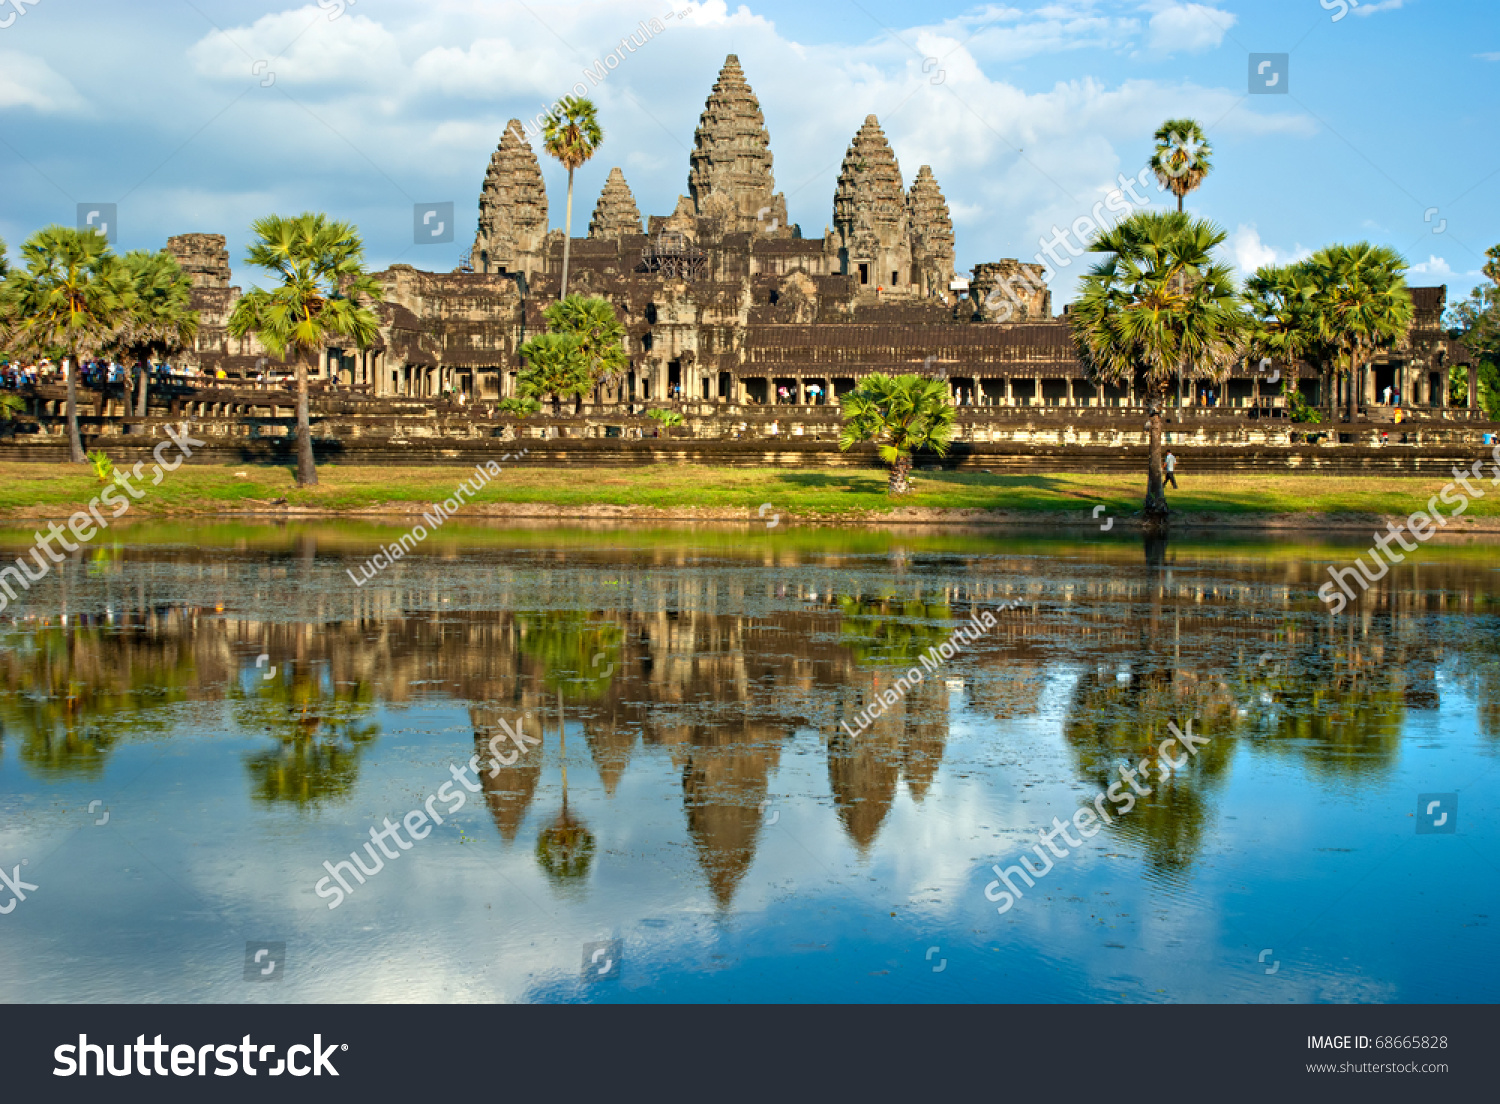 アンコール ワットの神殿 シェム リアップ カンボジア の写真素材 今すぐ編集